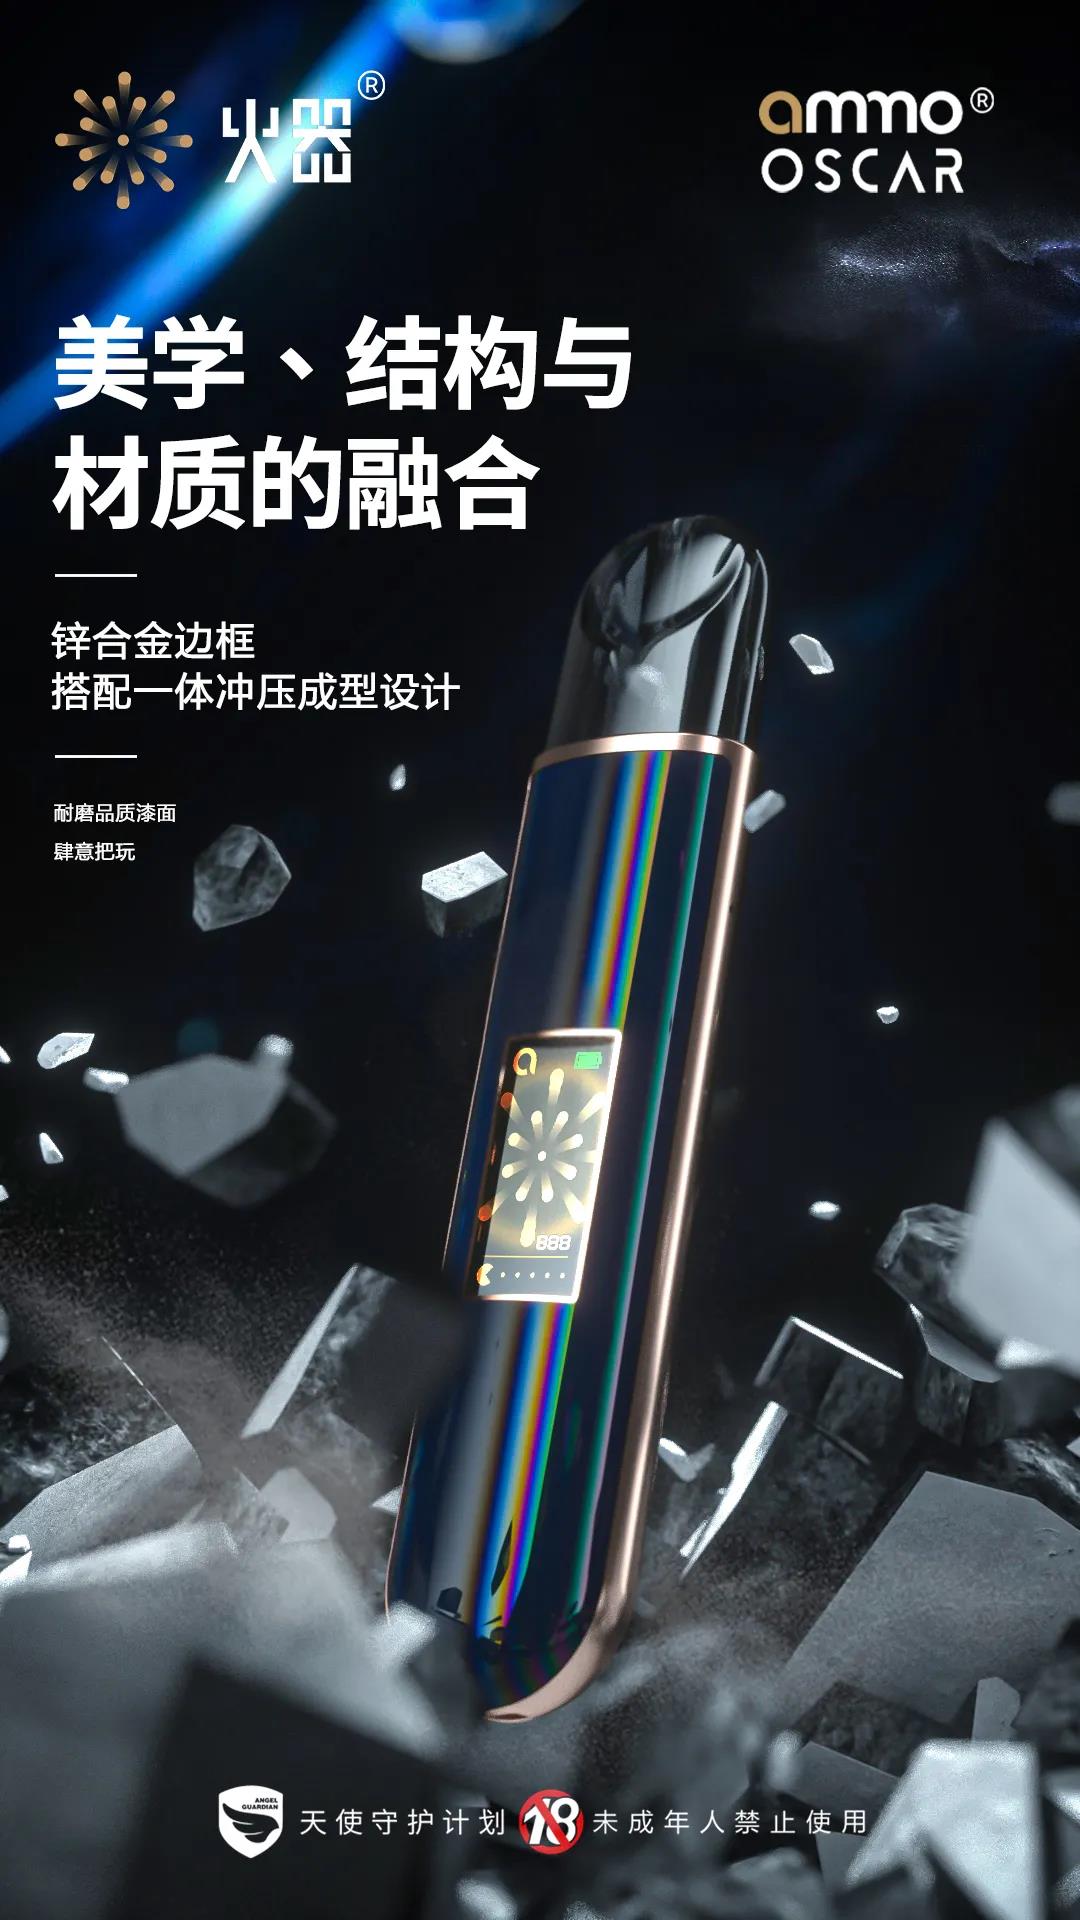 火器电子烟荣获“年度最受欢迎电子烟品牌”